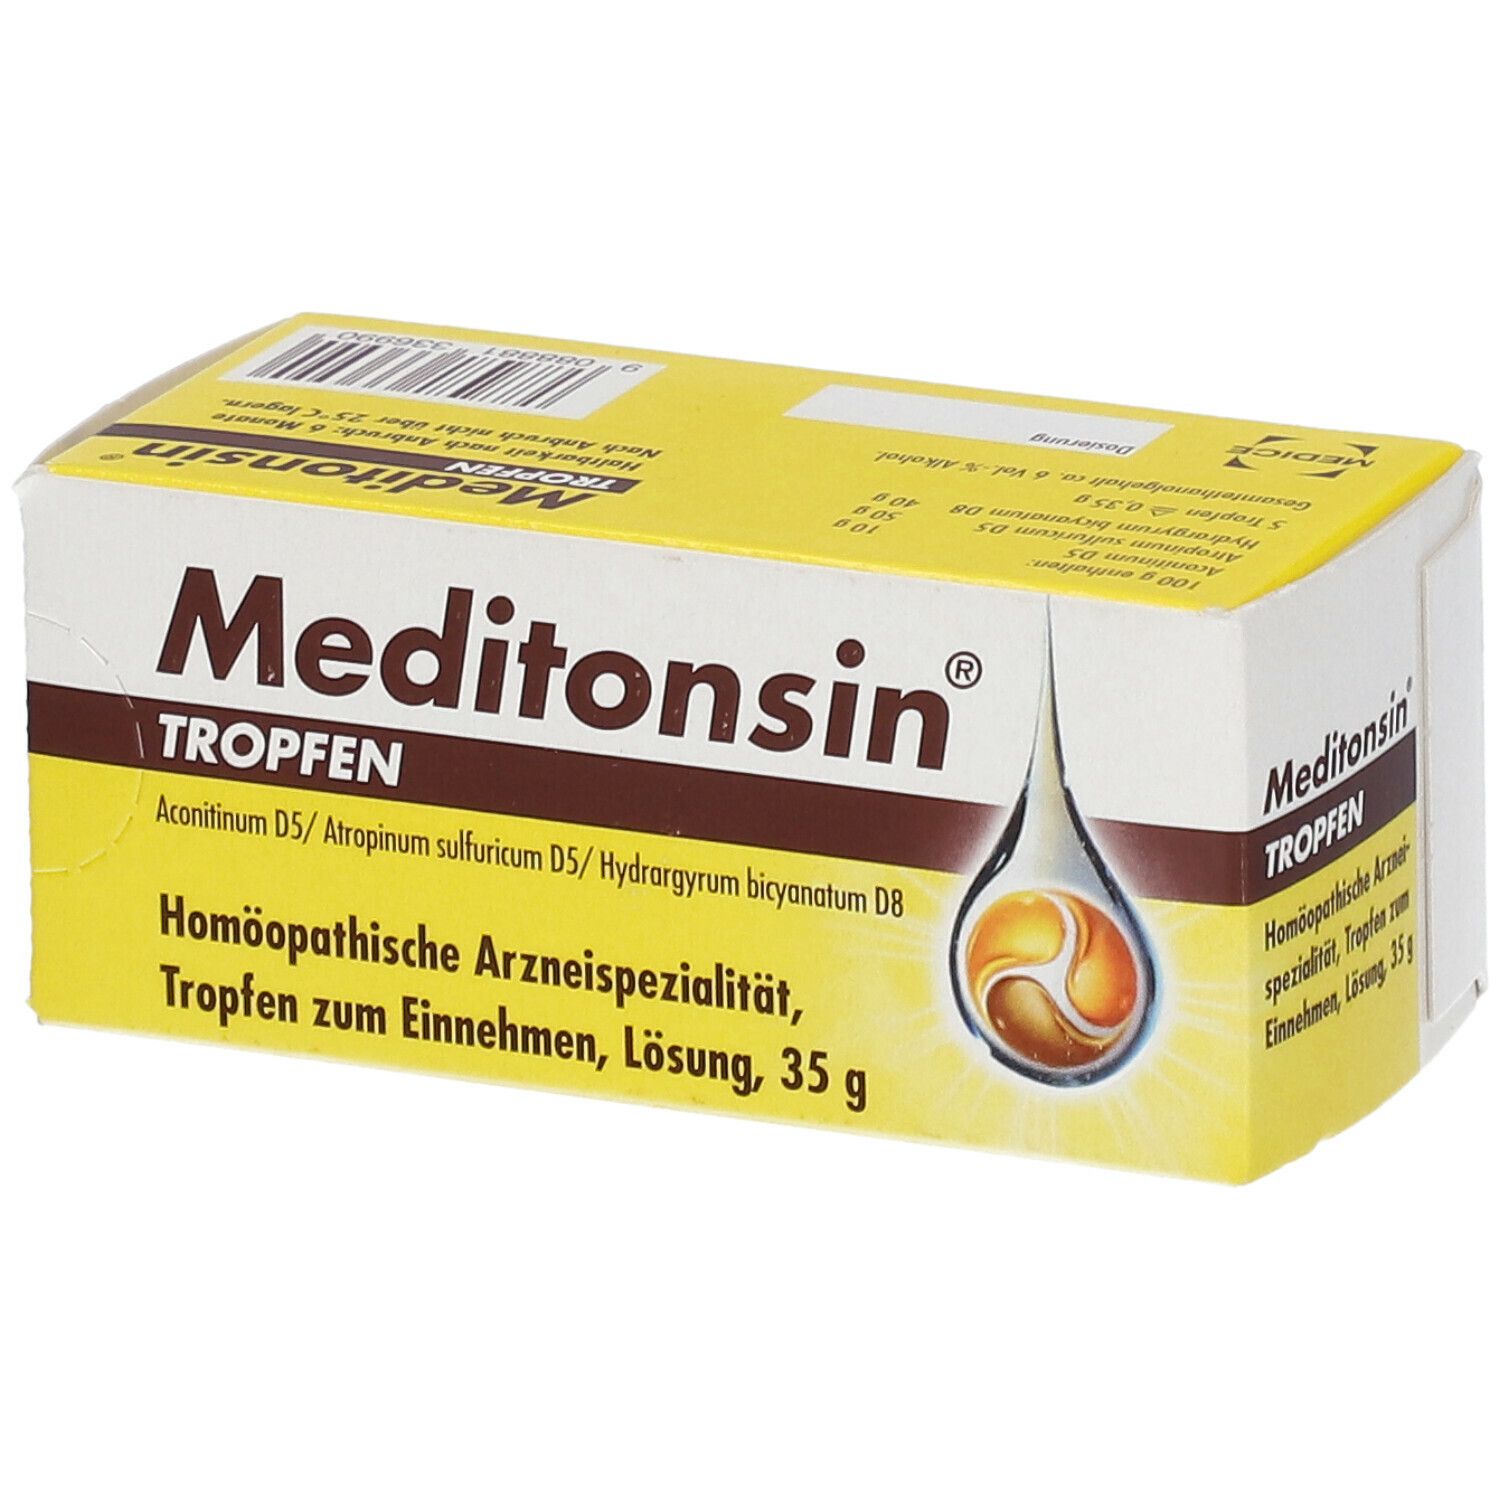 meditonsin®